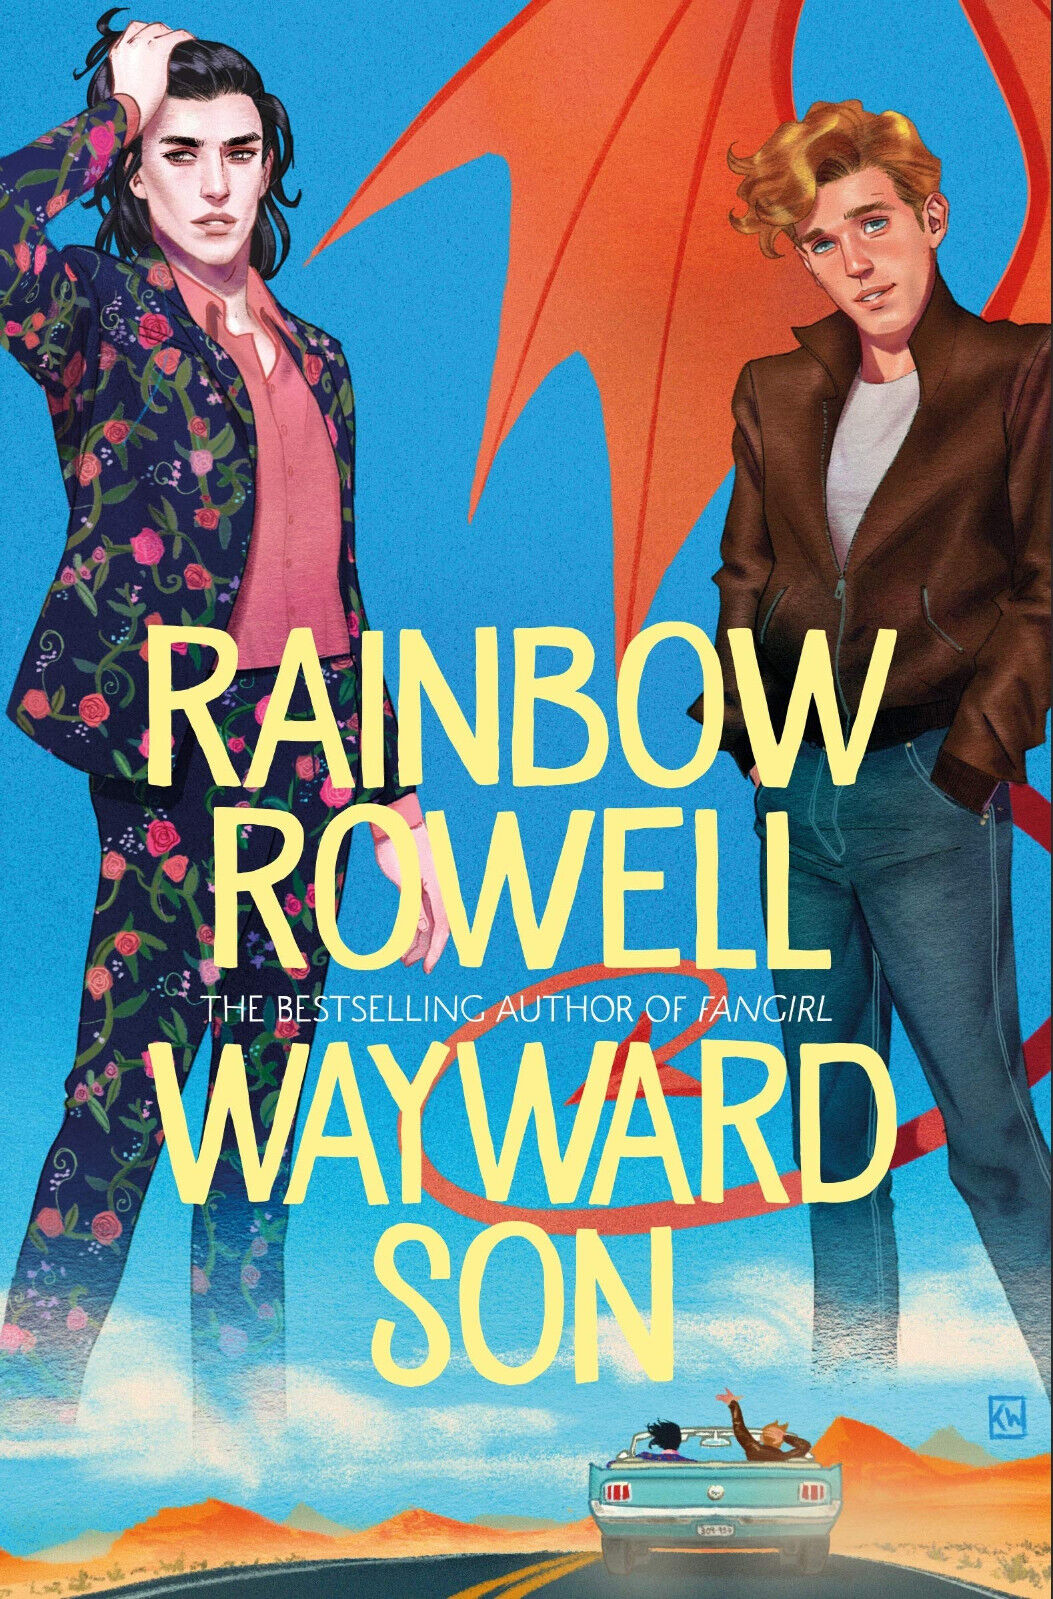 Rowell, R: Wayward Son - Rainbow Rowell - Pan Macmillan, 2019